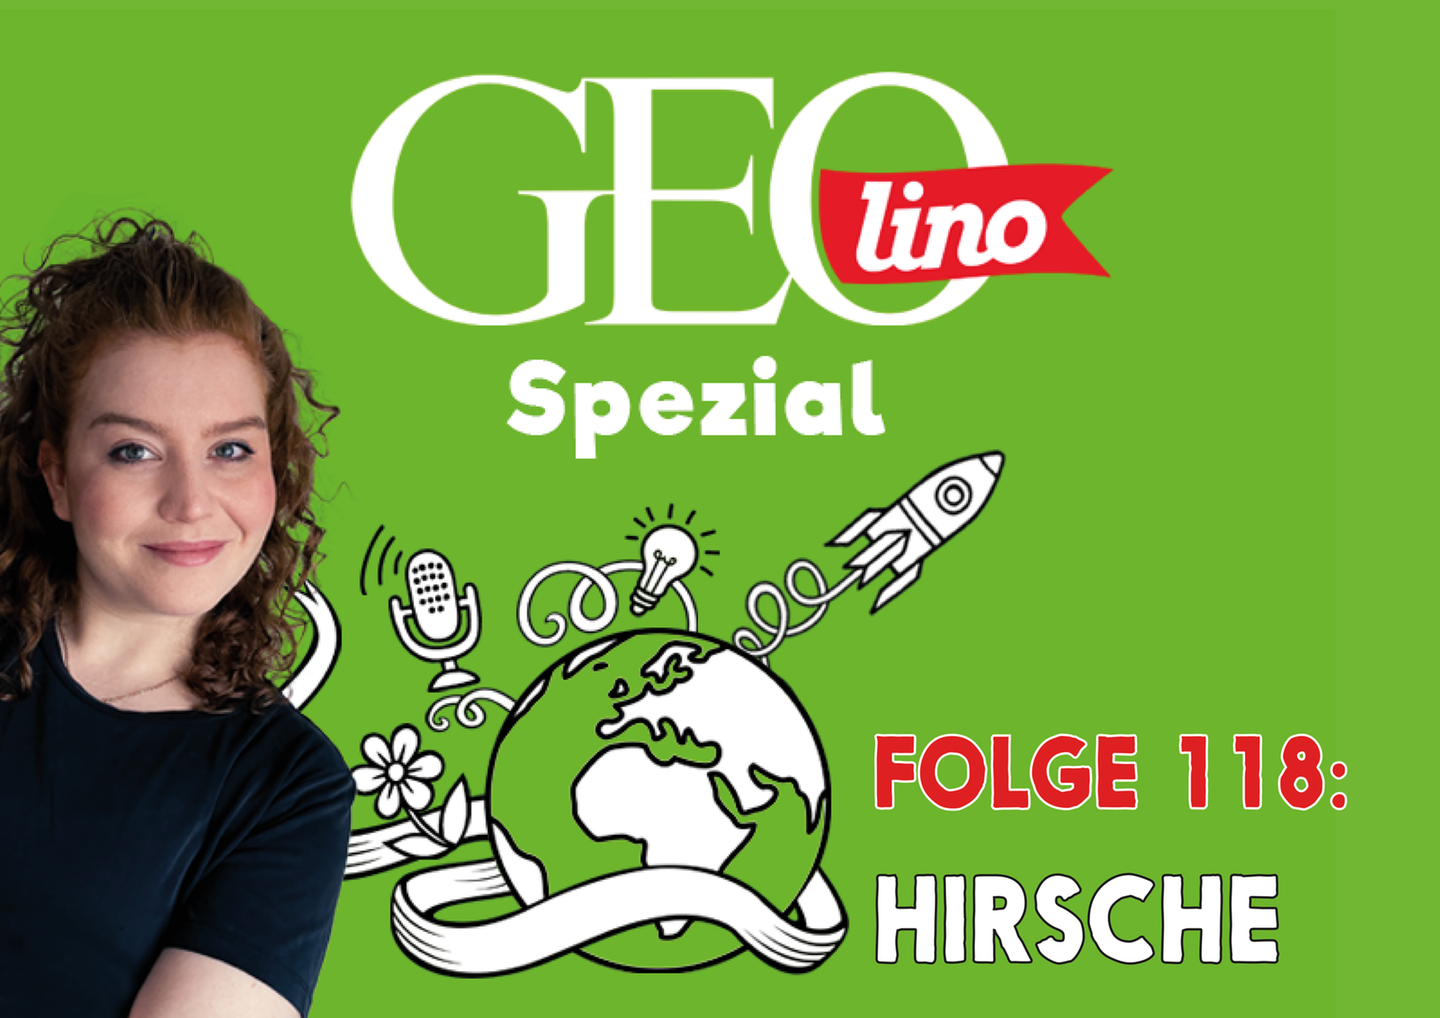 In Folge 118 unseres GEOlino-Podcasts geht es um Hirsche